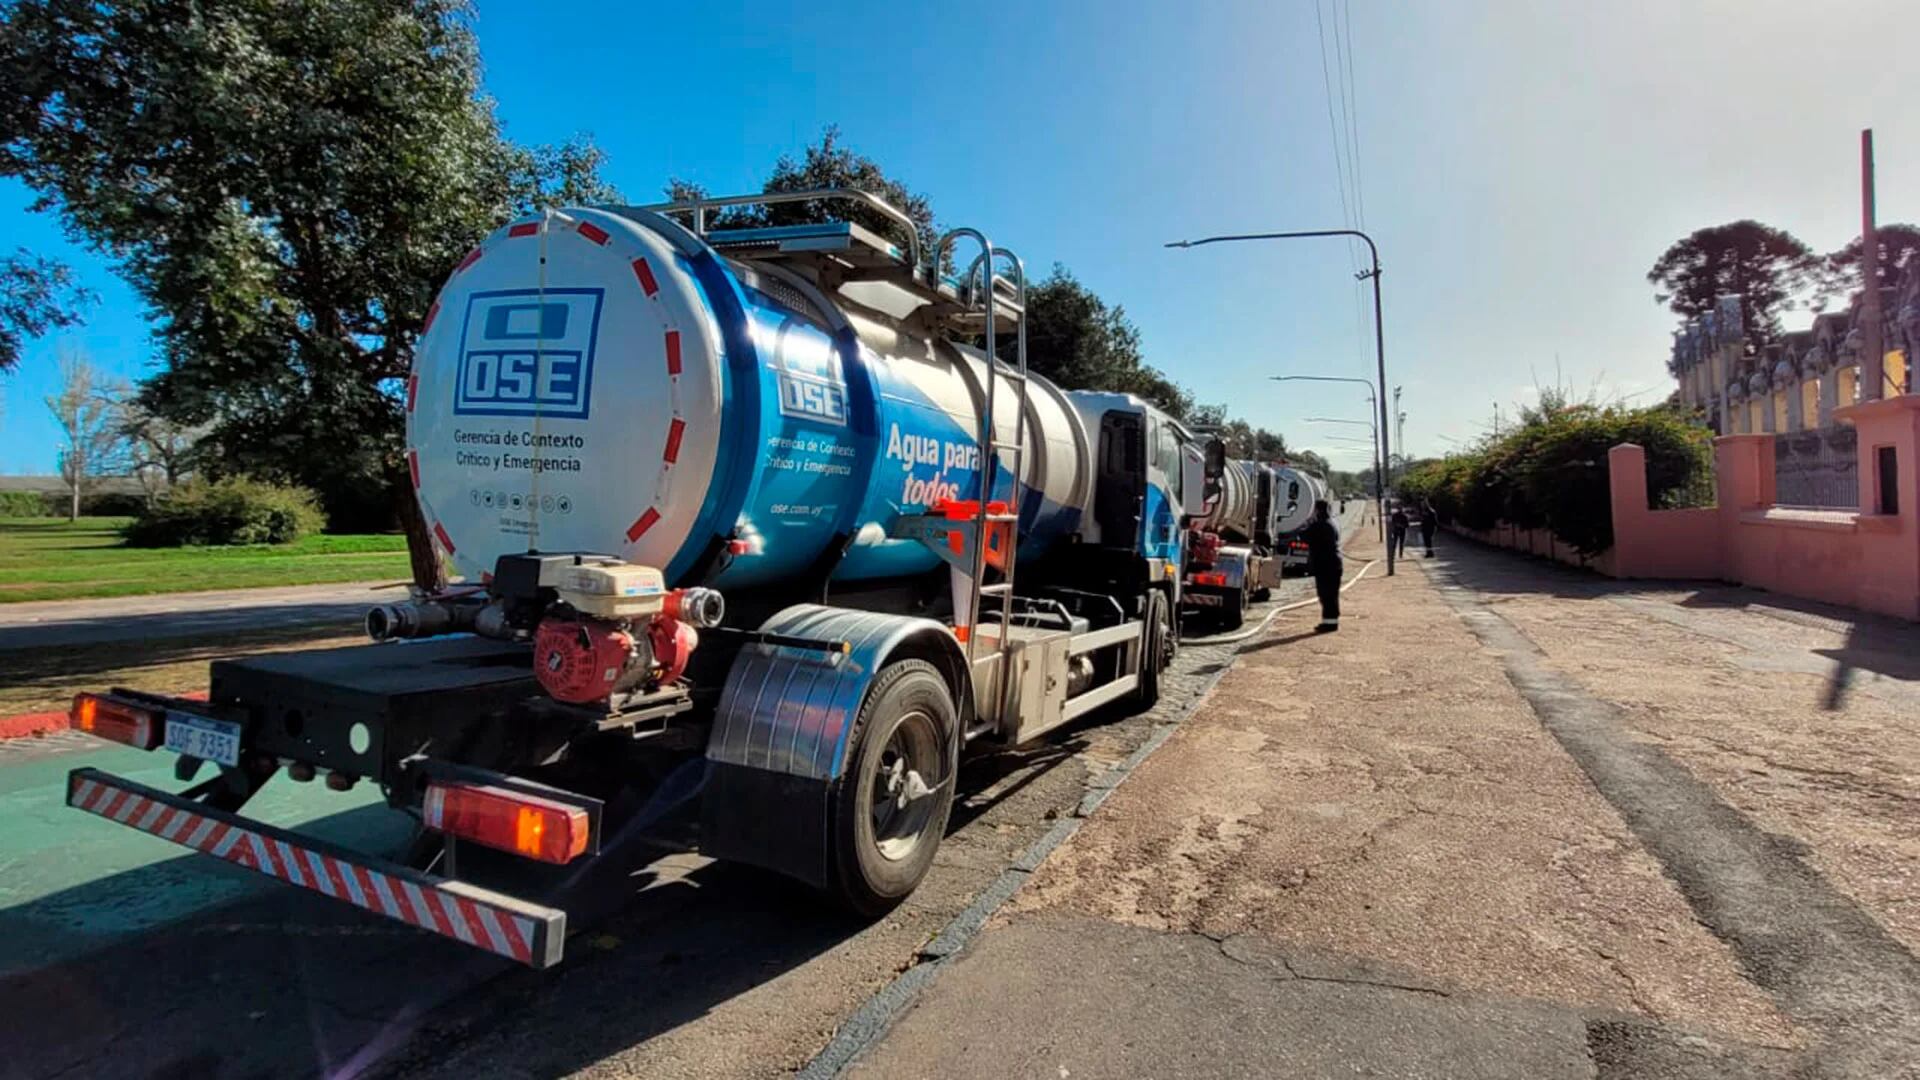 Camiones cisterna abastasen de agua potable a hospitales y escuelas (OSE-Uruguay)